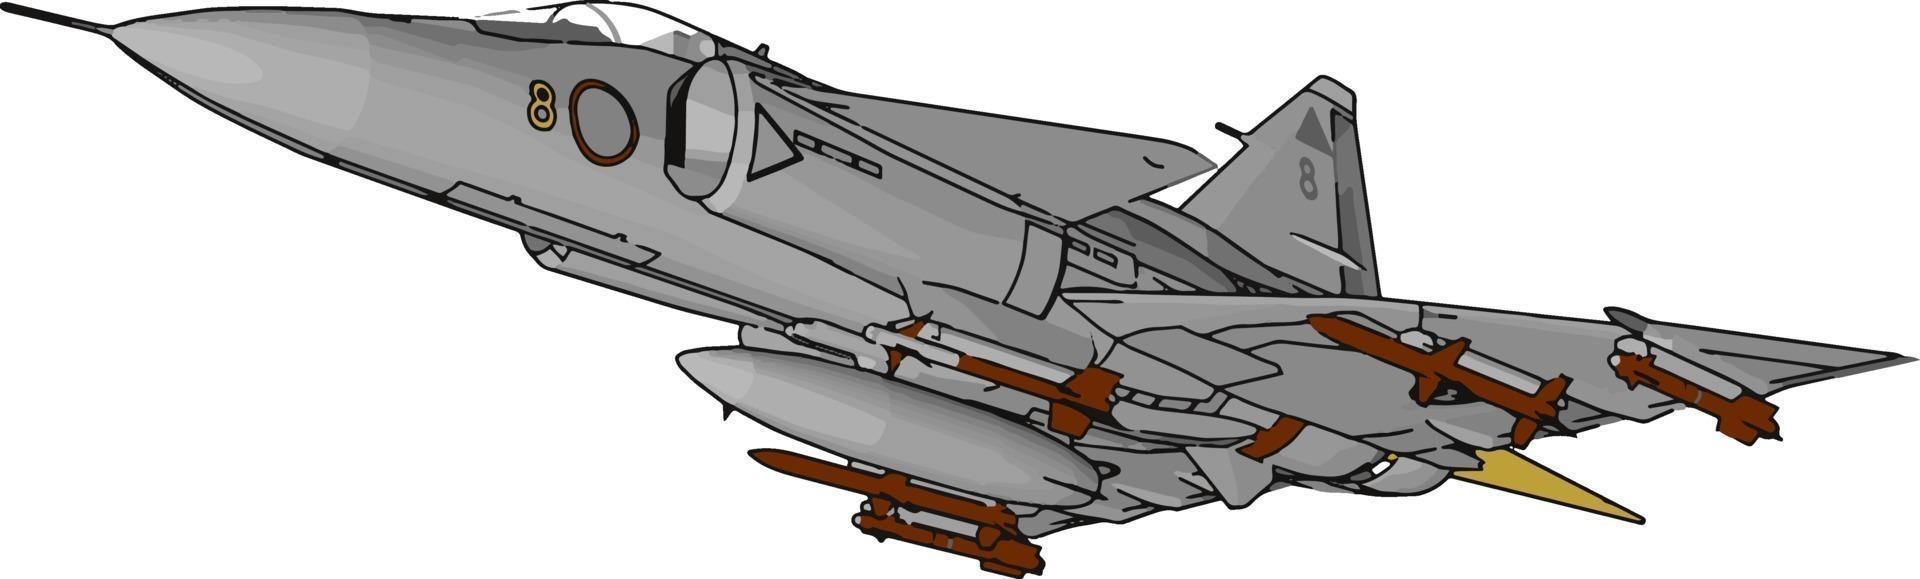 Flying jet, illustration, vector on white background.